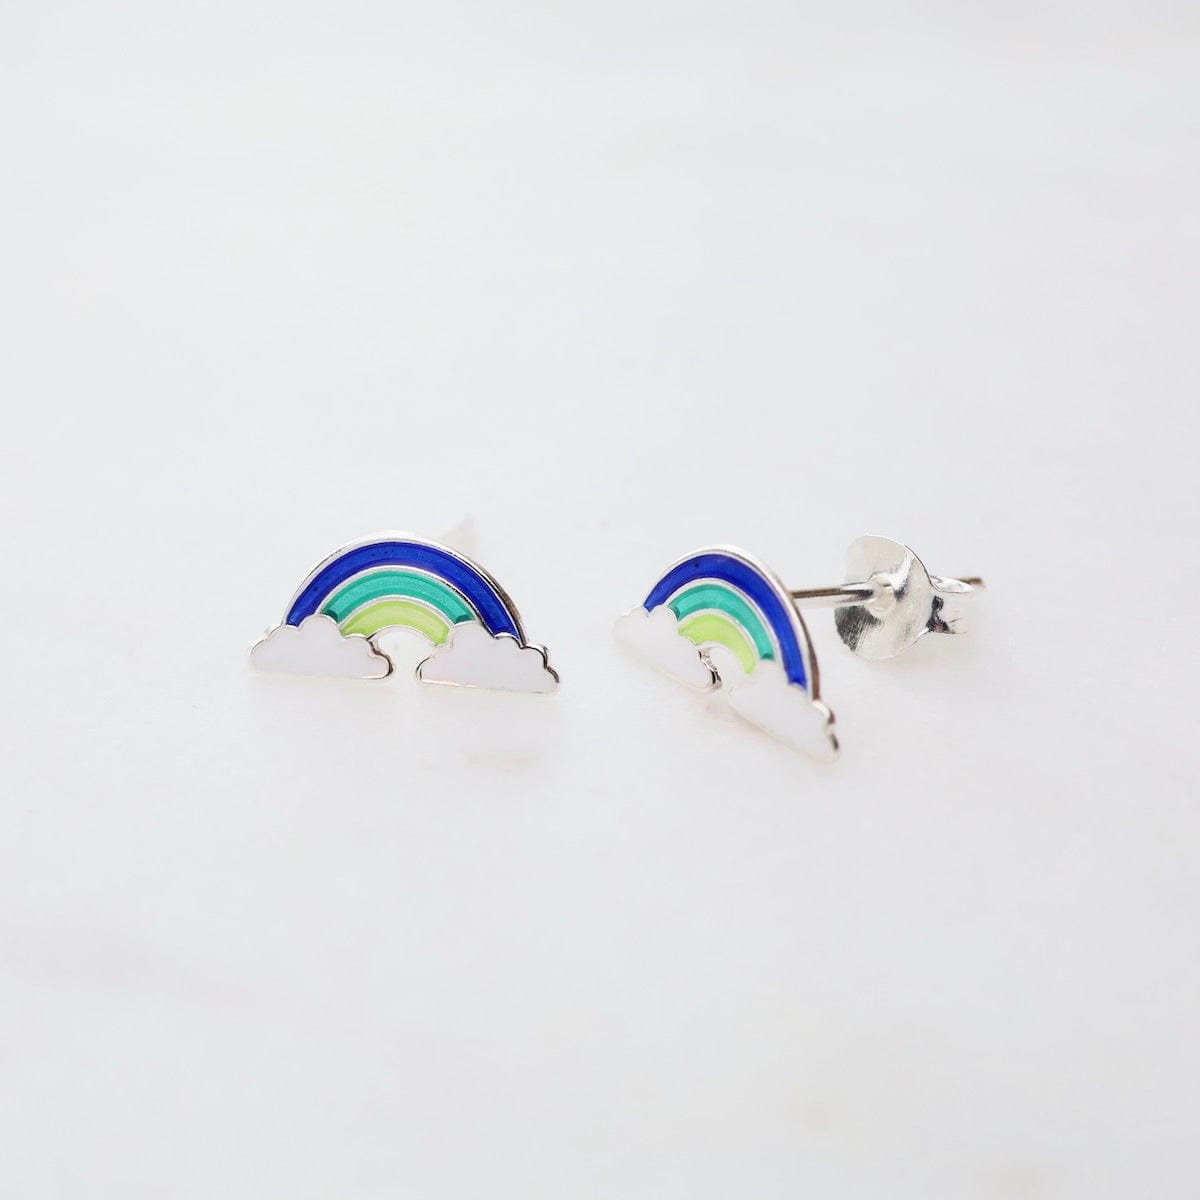 EAR Enamel Rainbow in Clouds Post Earrings - Blue, Teal, & Yellow